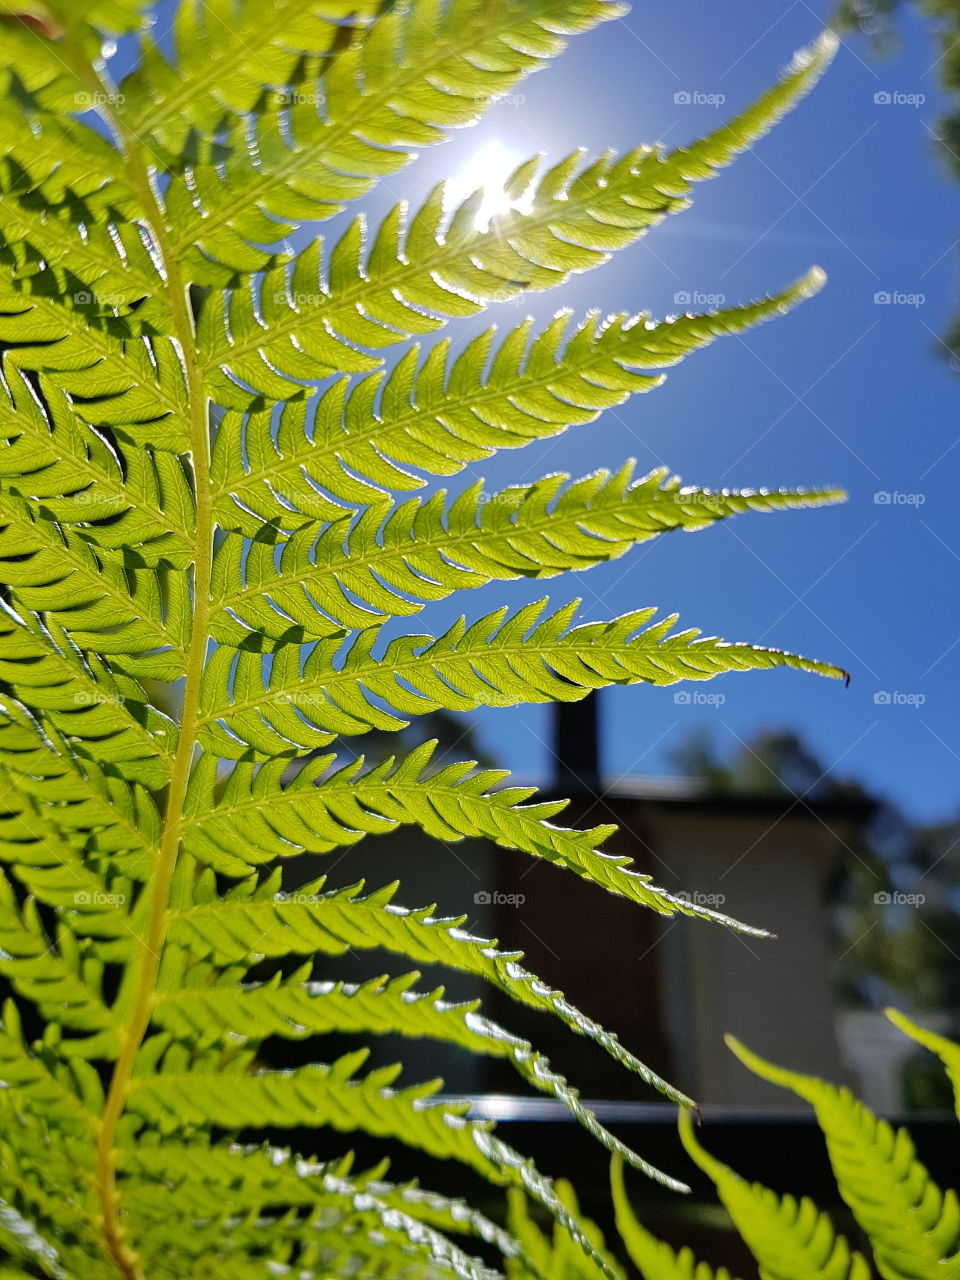 fern in sunlight